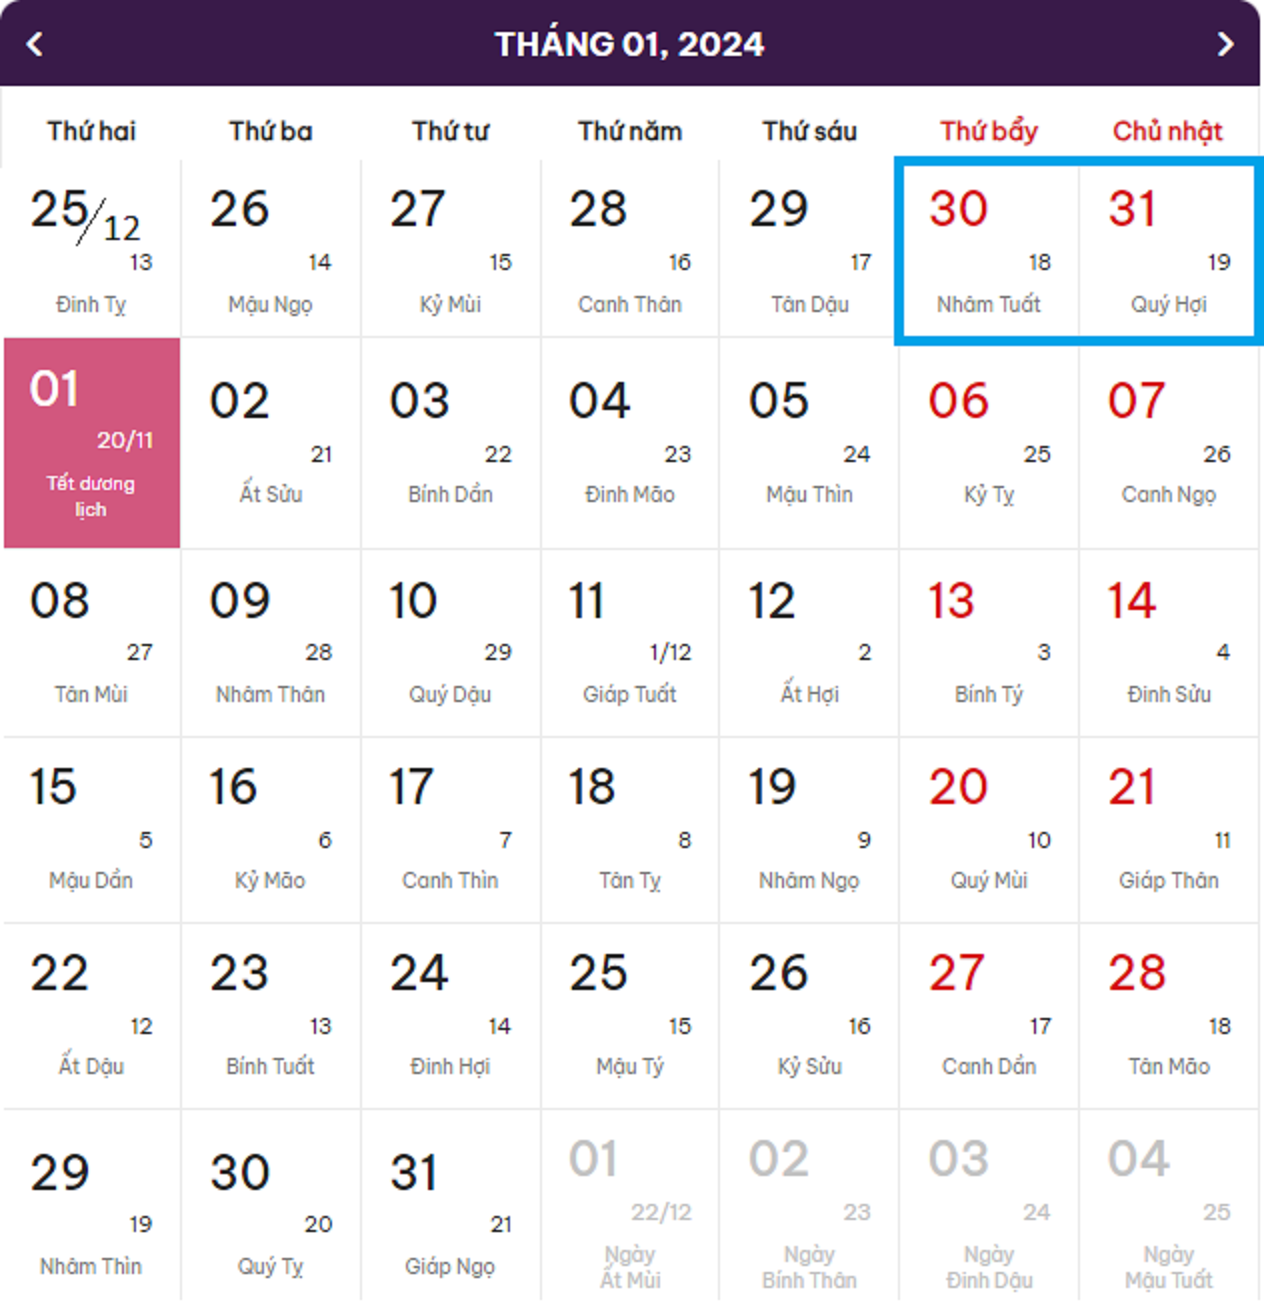 Lịch nghỉ Tết Dương lịch 2024 (màu xanh là ngày nghỉ cuối tuần, màu hồng là ngày nghỉ lễ chính thức).